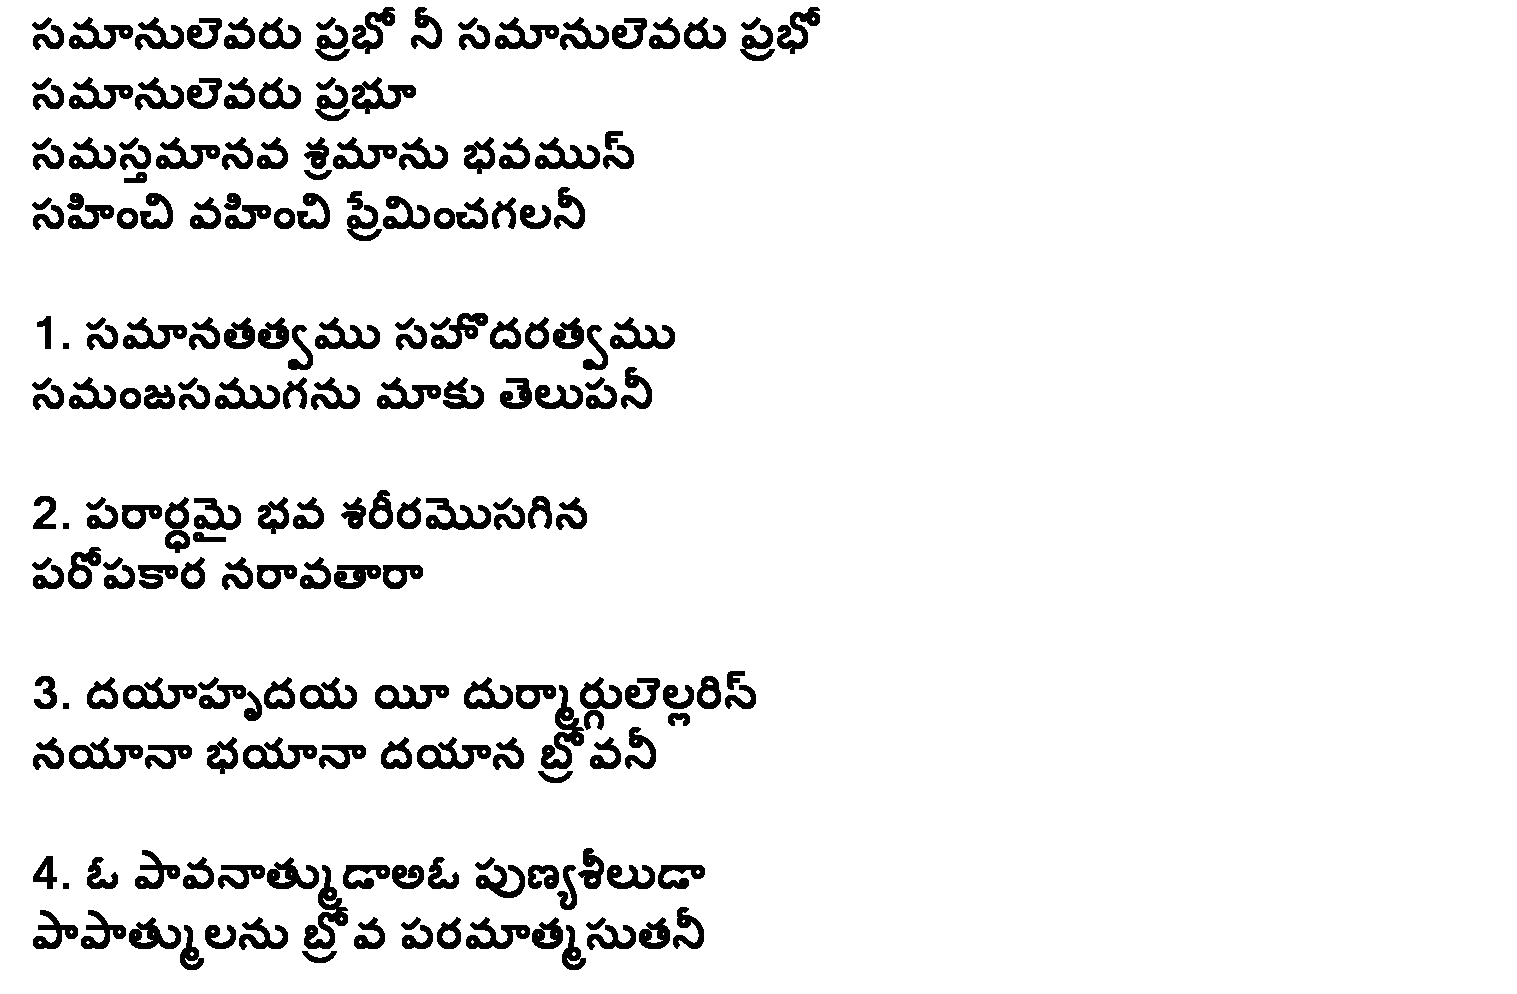 Samanulevaru prabho song lyrics